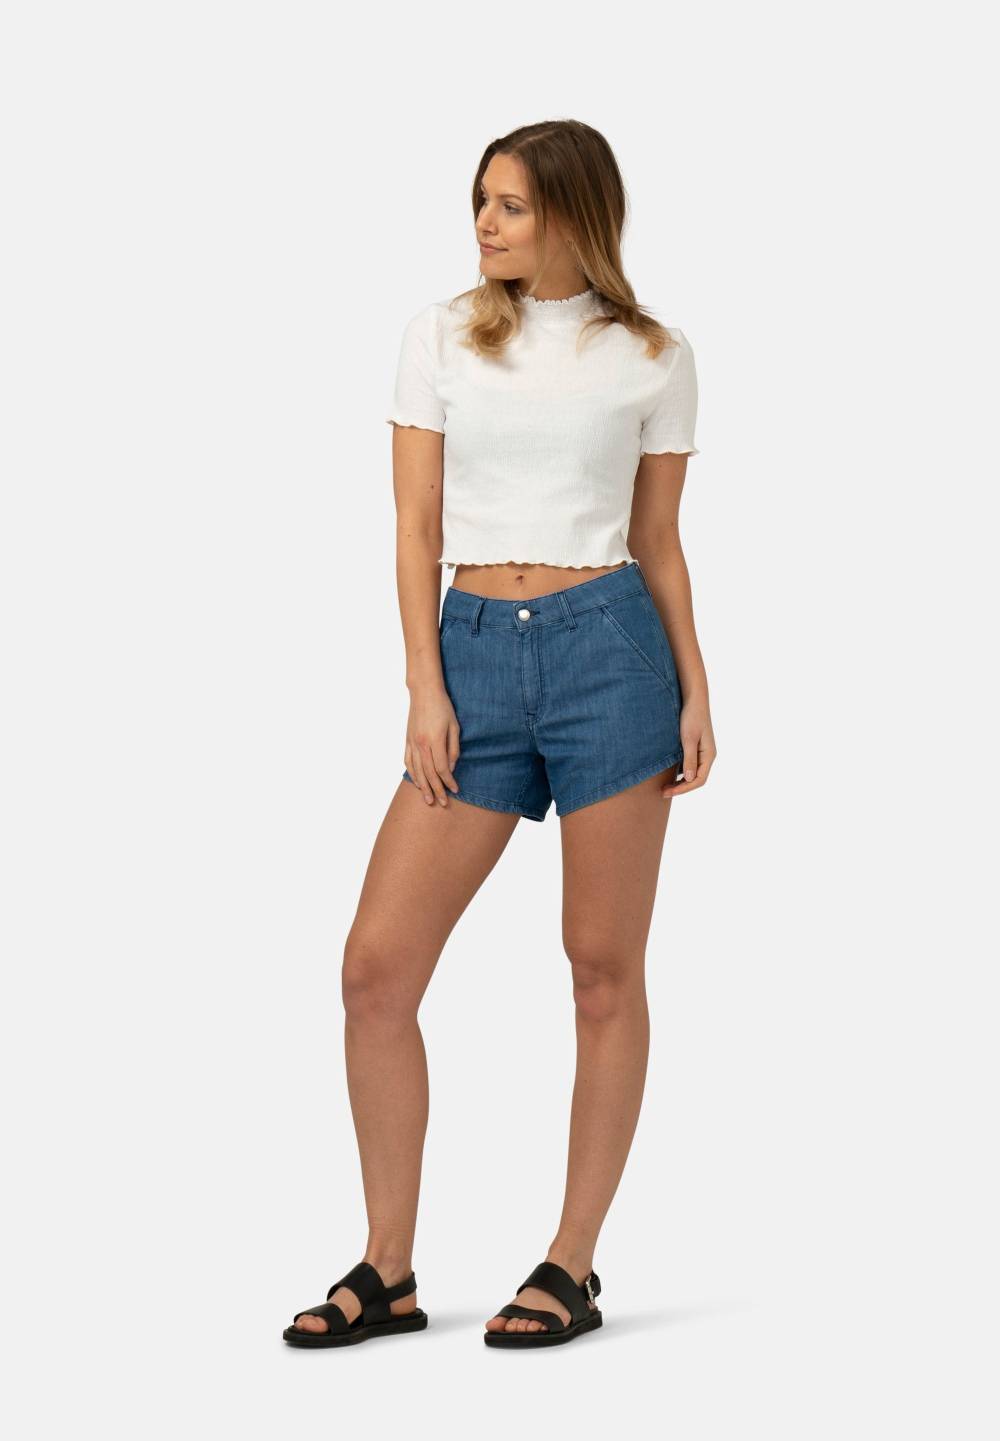 mud jeans shorts minimalist wardrobe